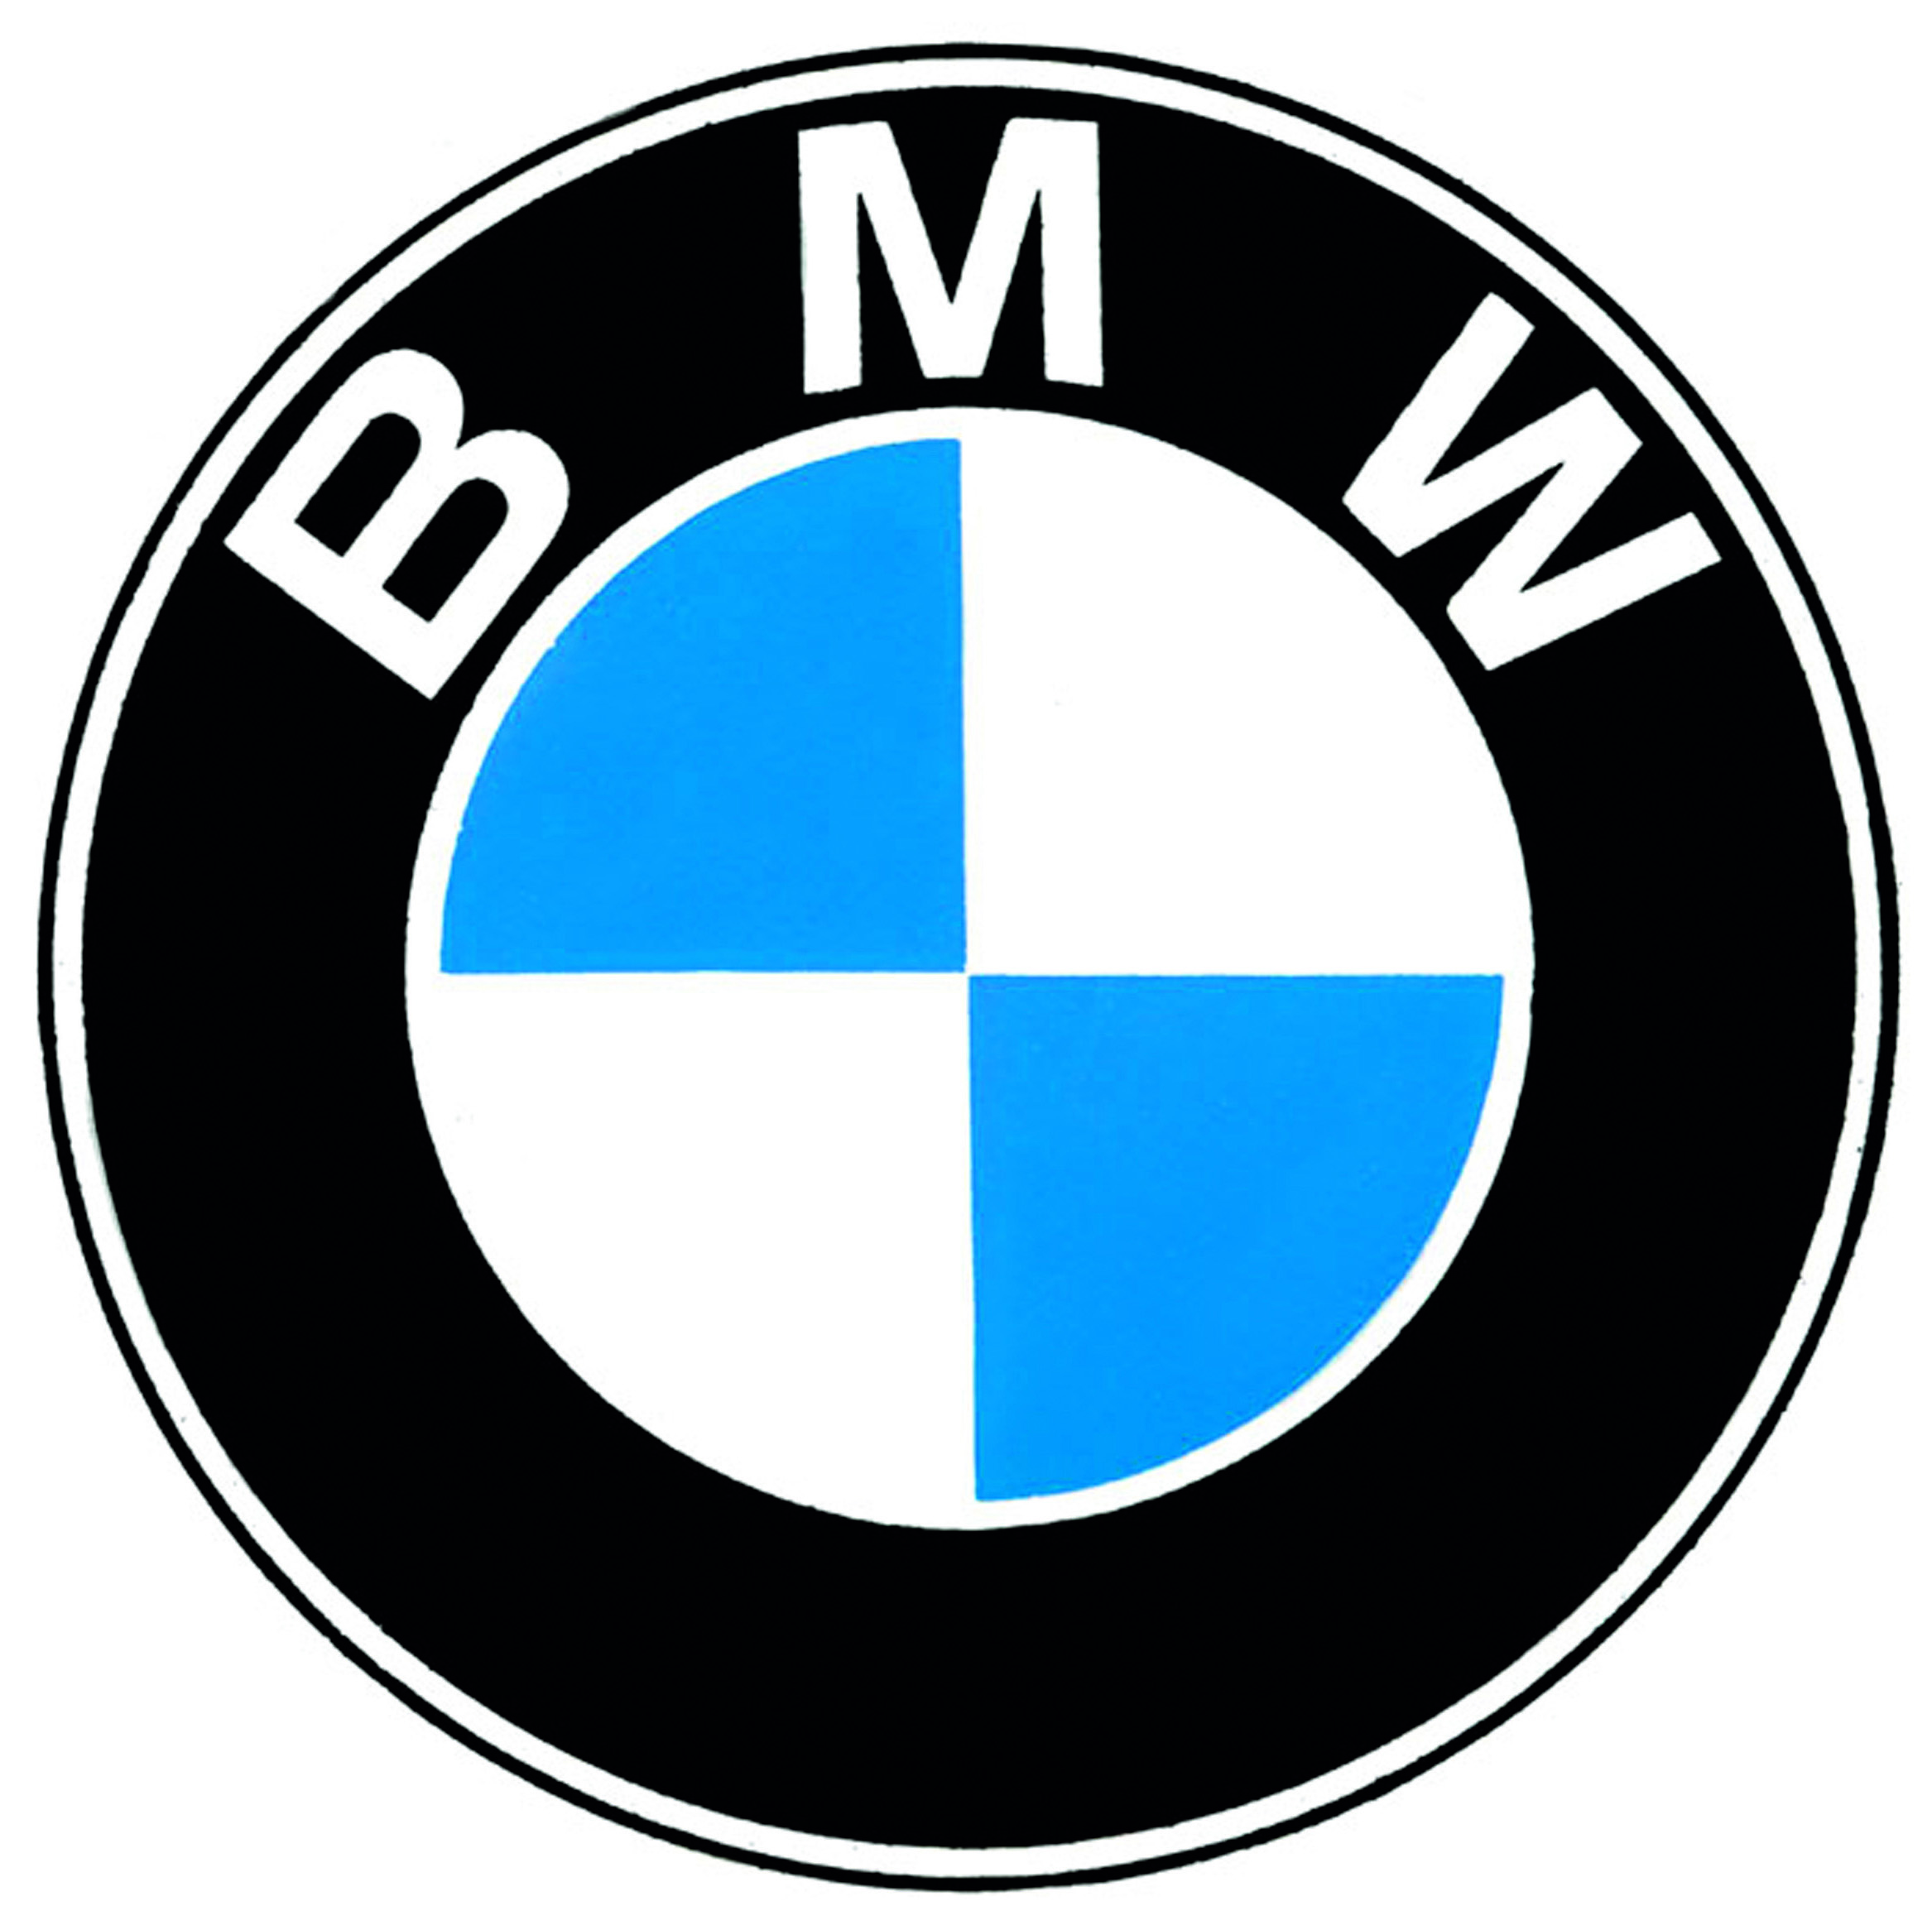 Bmw significado del logo #4